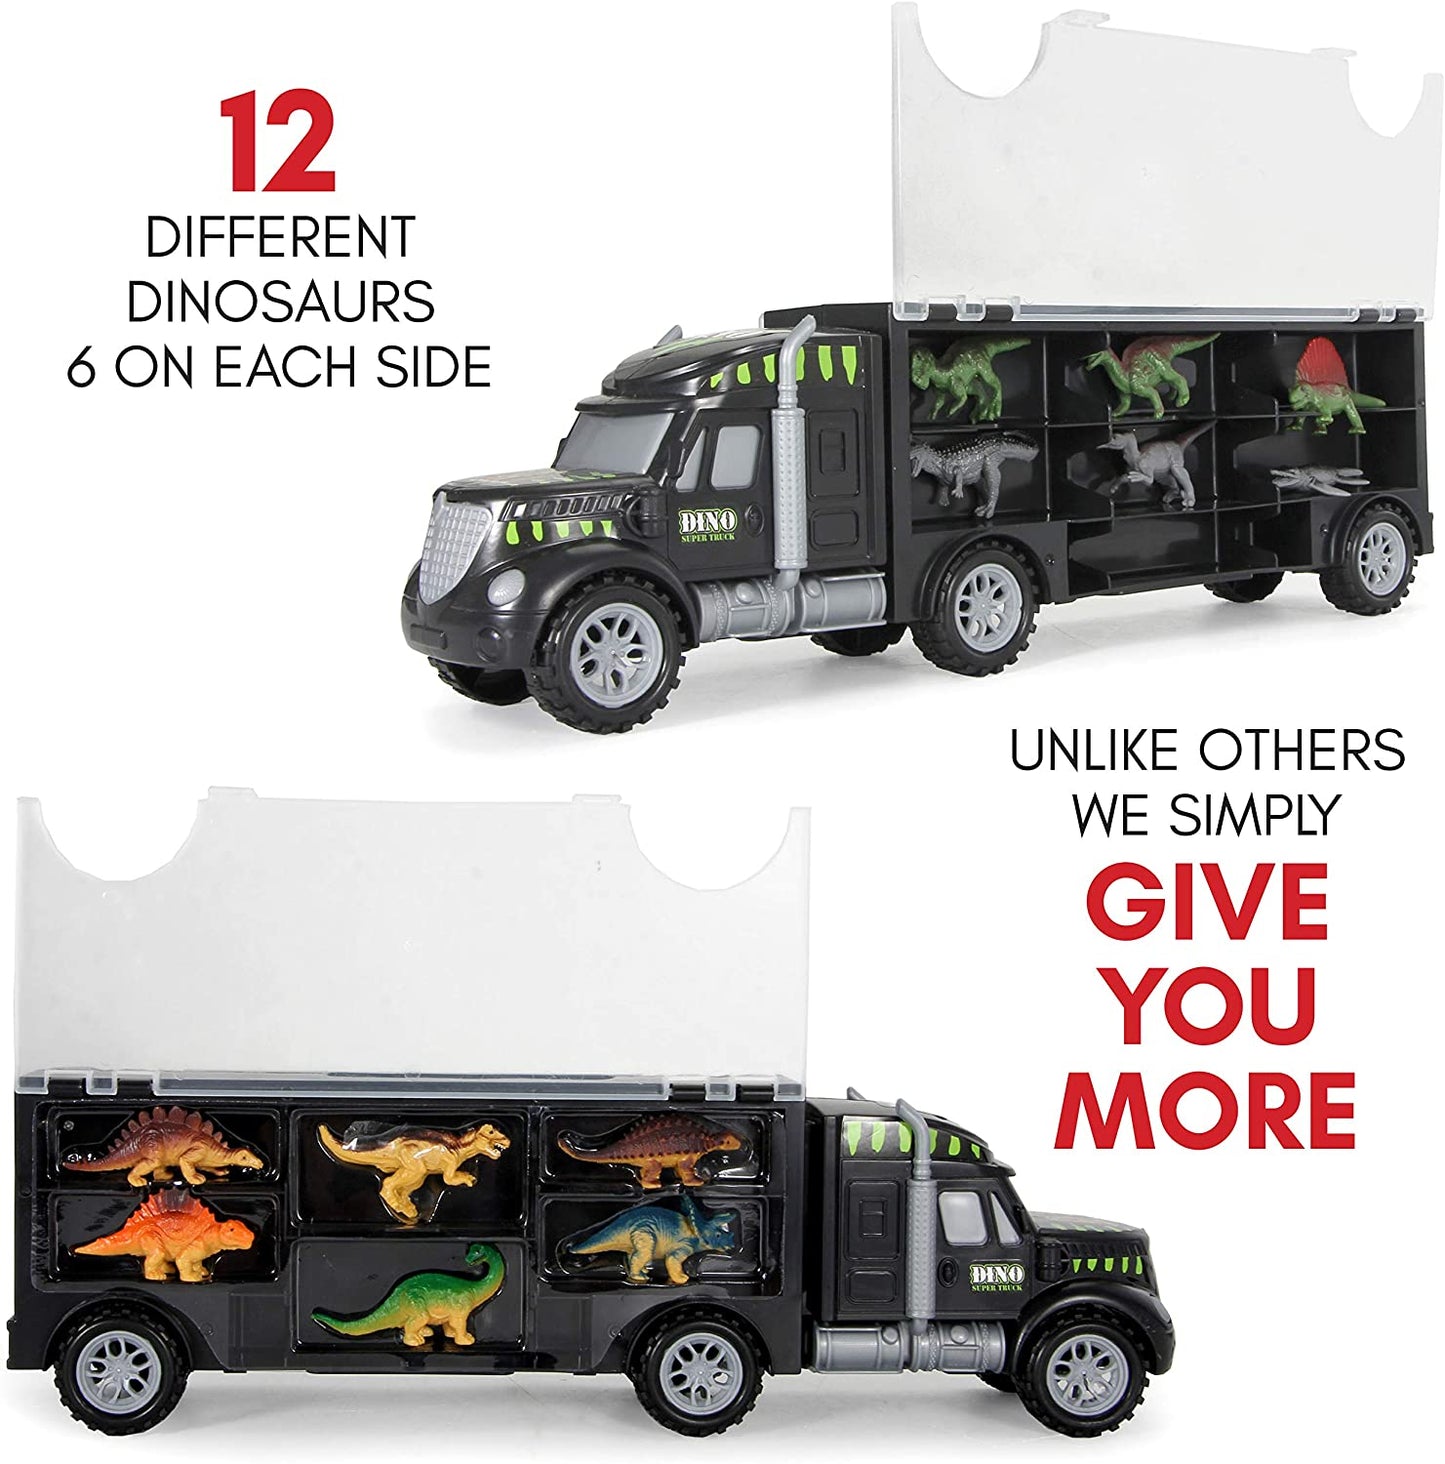 Portador de camión de dinosaurios - Juego de 12 dinosaurios de juguete con un coche de dinosaurio